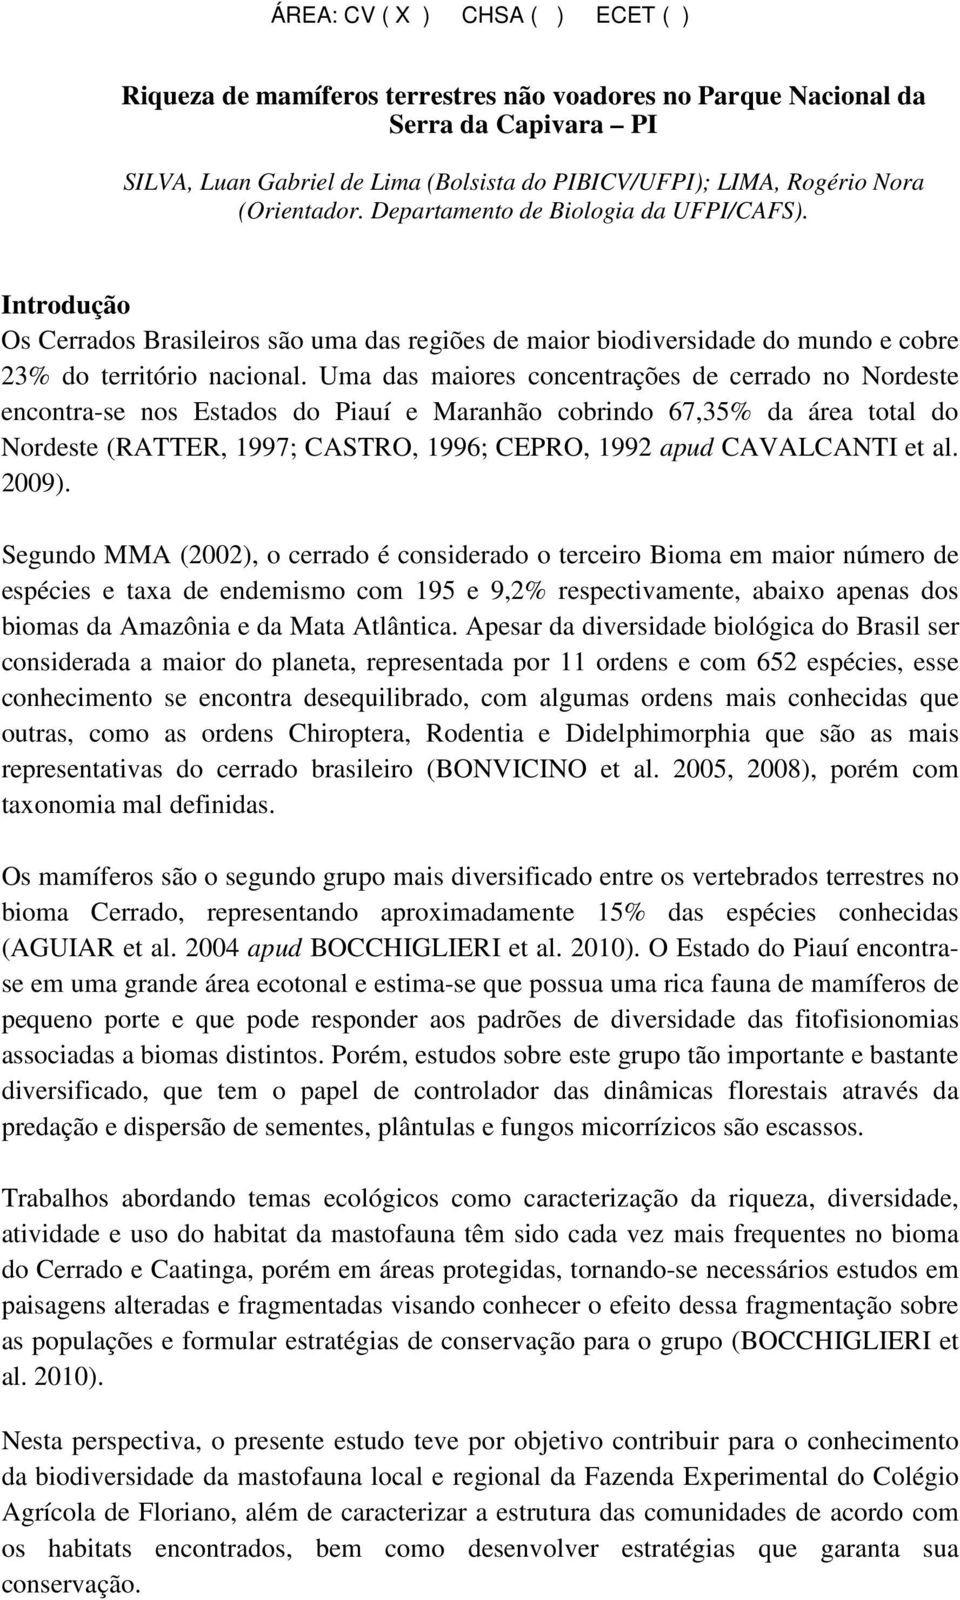 Uma das maiores concentrações de cerrado no Nordeste encontra-se nos Estados do Piauí e Maranhão cobrindo 67,35% da área total do Nordeste (RATTER, 1997; CASTRO, 1996; CEPRO, 1992 apud CAVALCANTI et